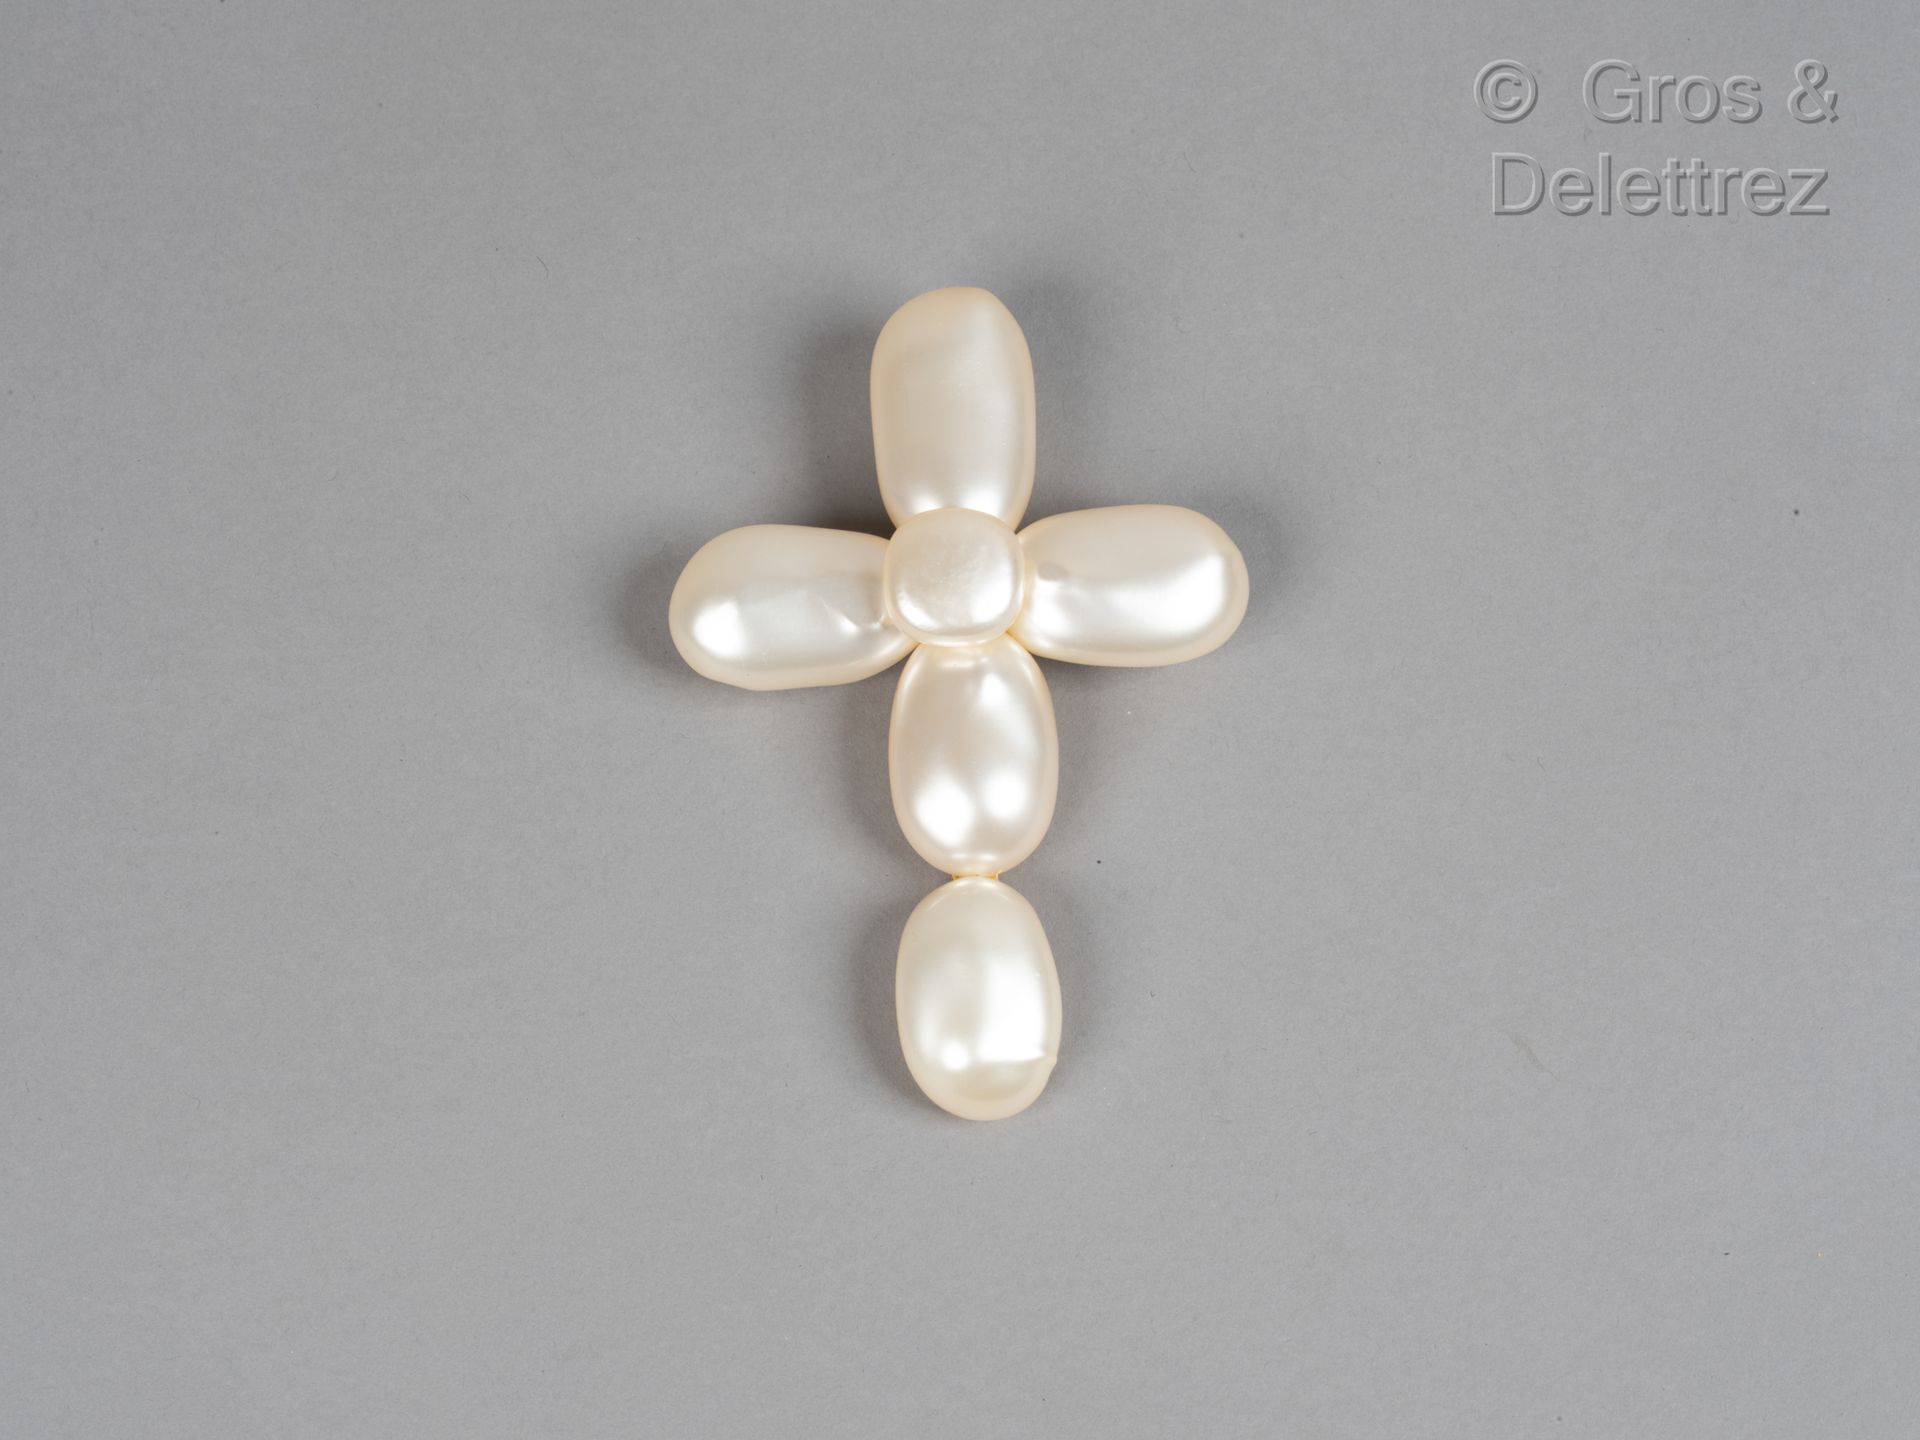 Null 卡尔-拉格斐的香奈儿 & 维克图瓦-德-卡斯特拉内

1992年春/夏高级时装系列

华丽的白色巴洛克式仿珍珠十字架胸针。高度：11厘米。签名。参考资&hellip;